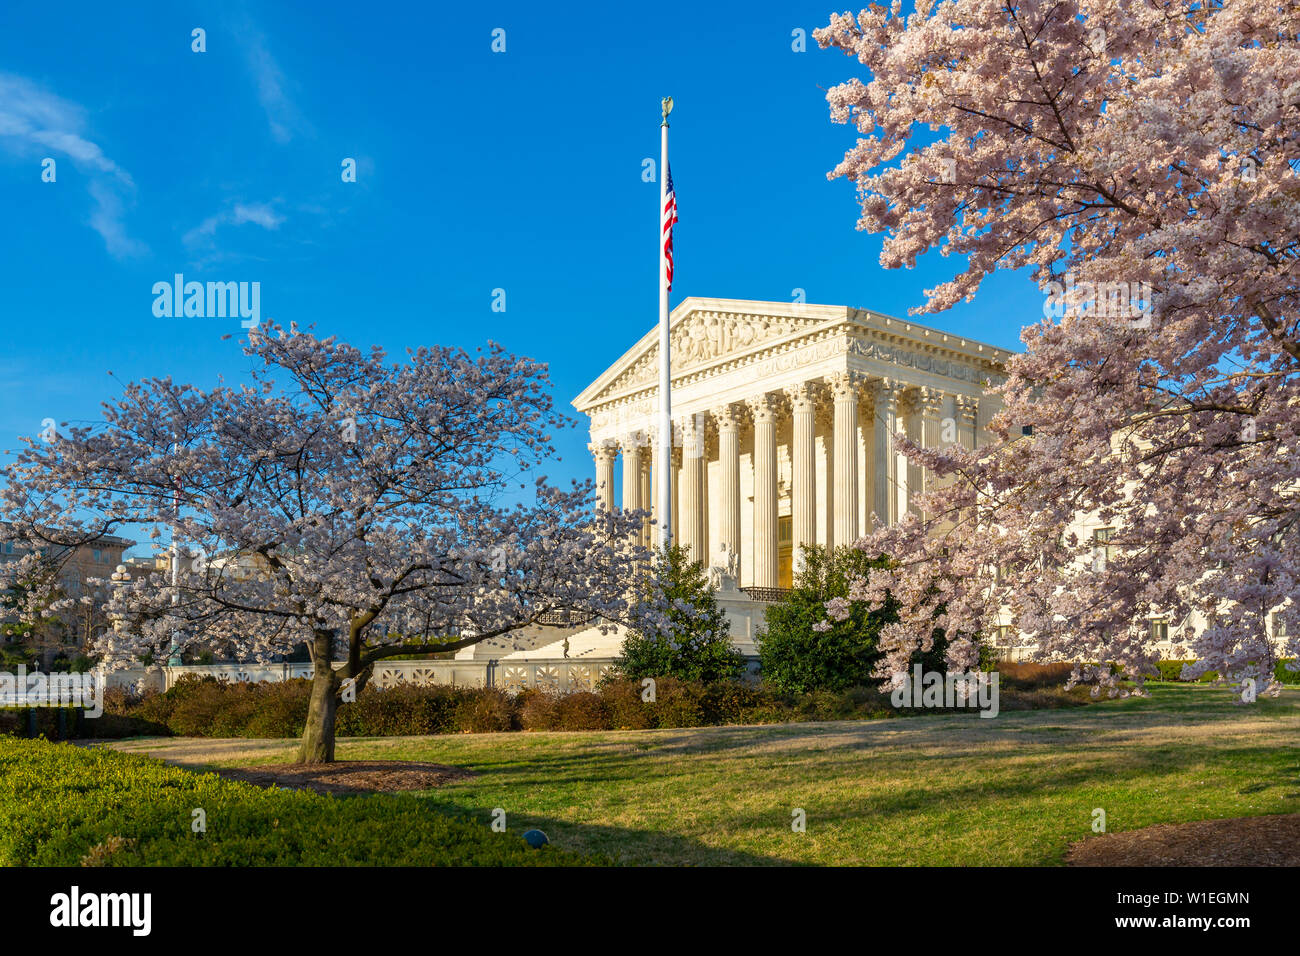 Der Oberste Gerichtshof der Vereinigten Staaten im Frühjahr, Washington D.C., Vereinigte Staaten von Amerika, Nordamerika Stockfoto